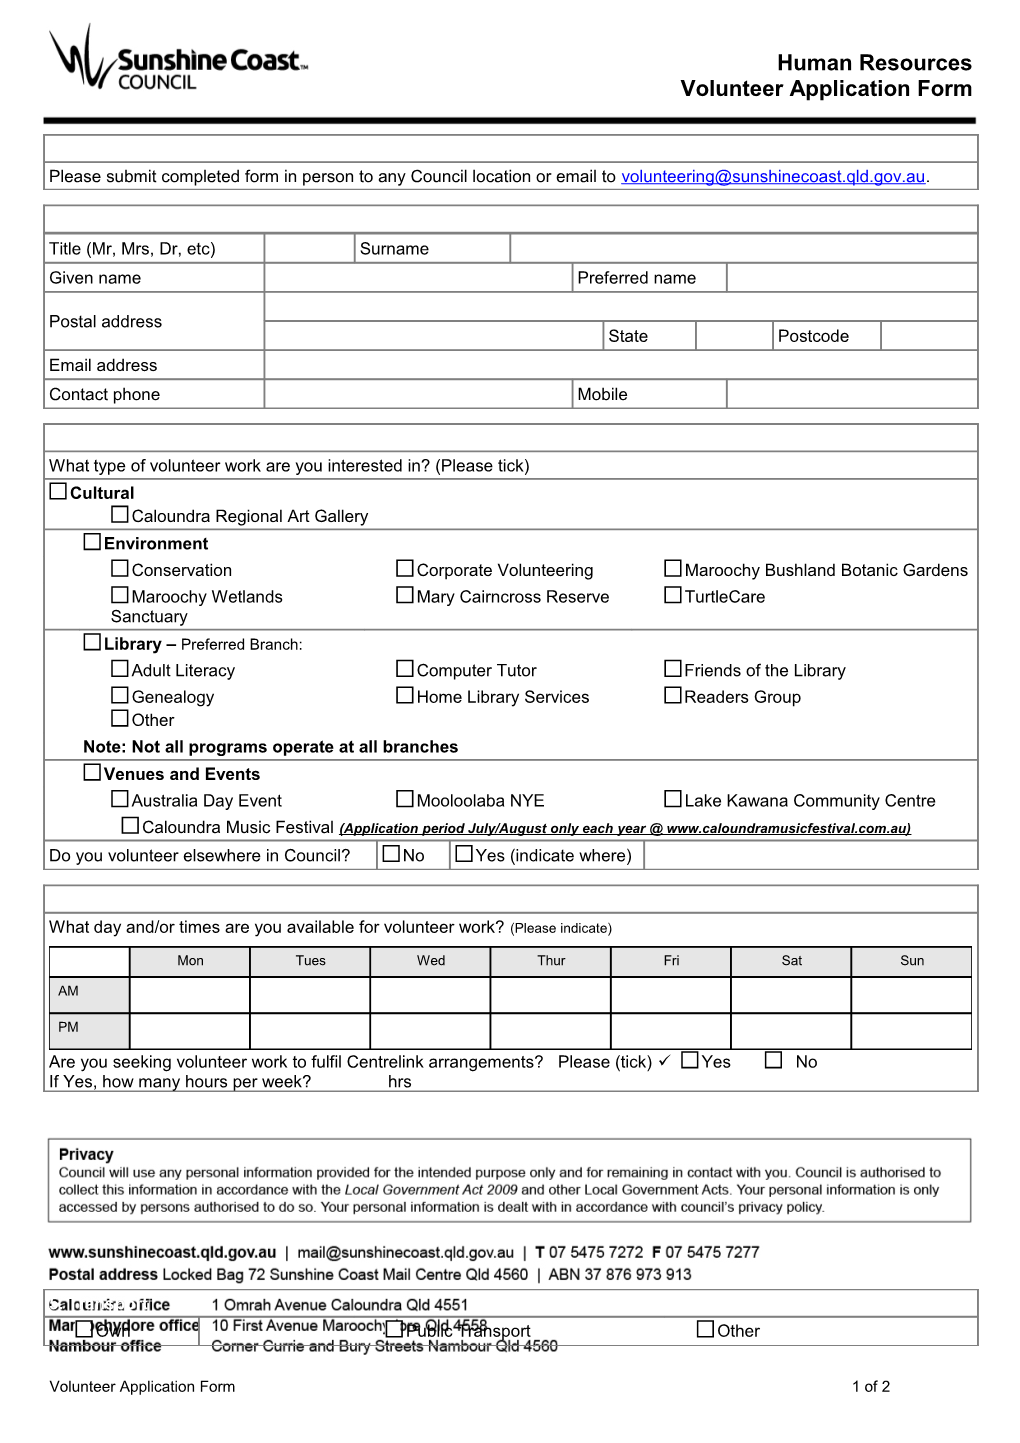 Volunteer Application Form1 of 2